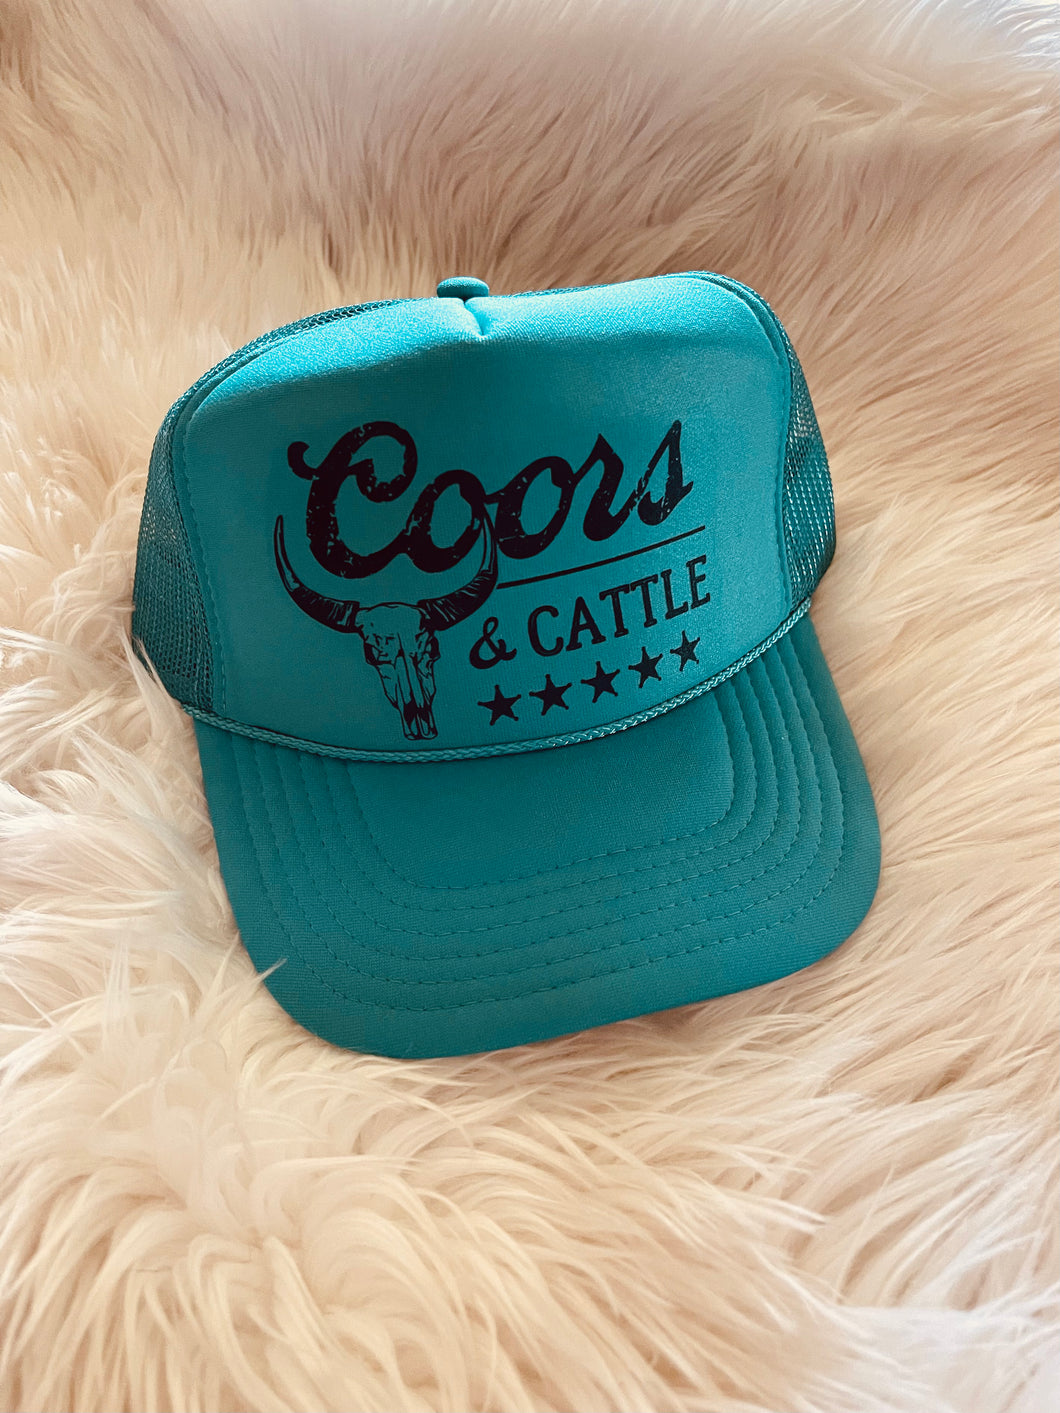 Coors & Cattle Trucker Hat